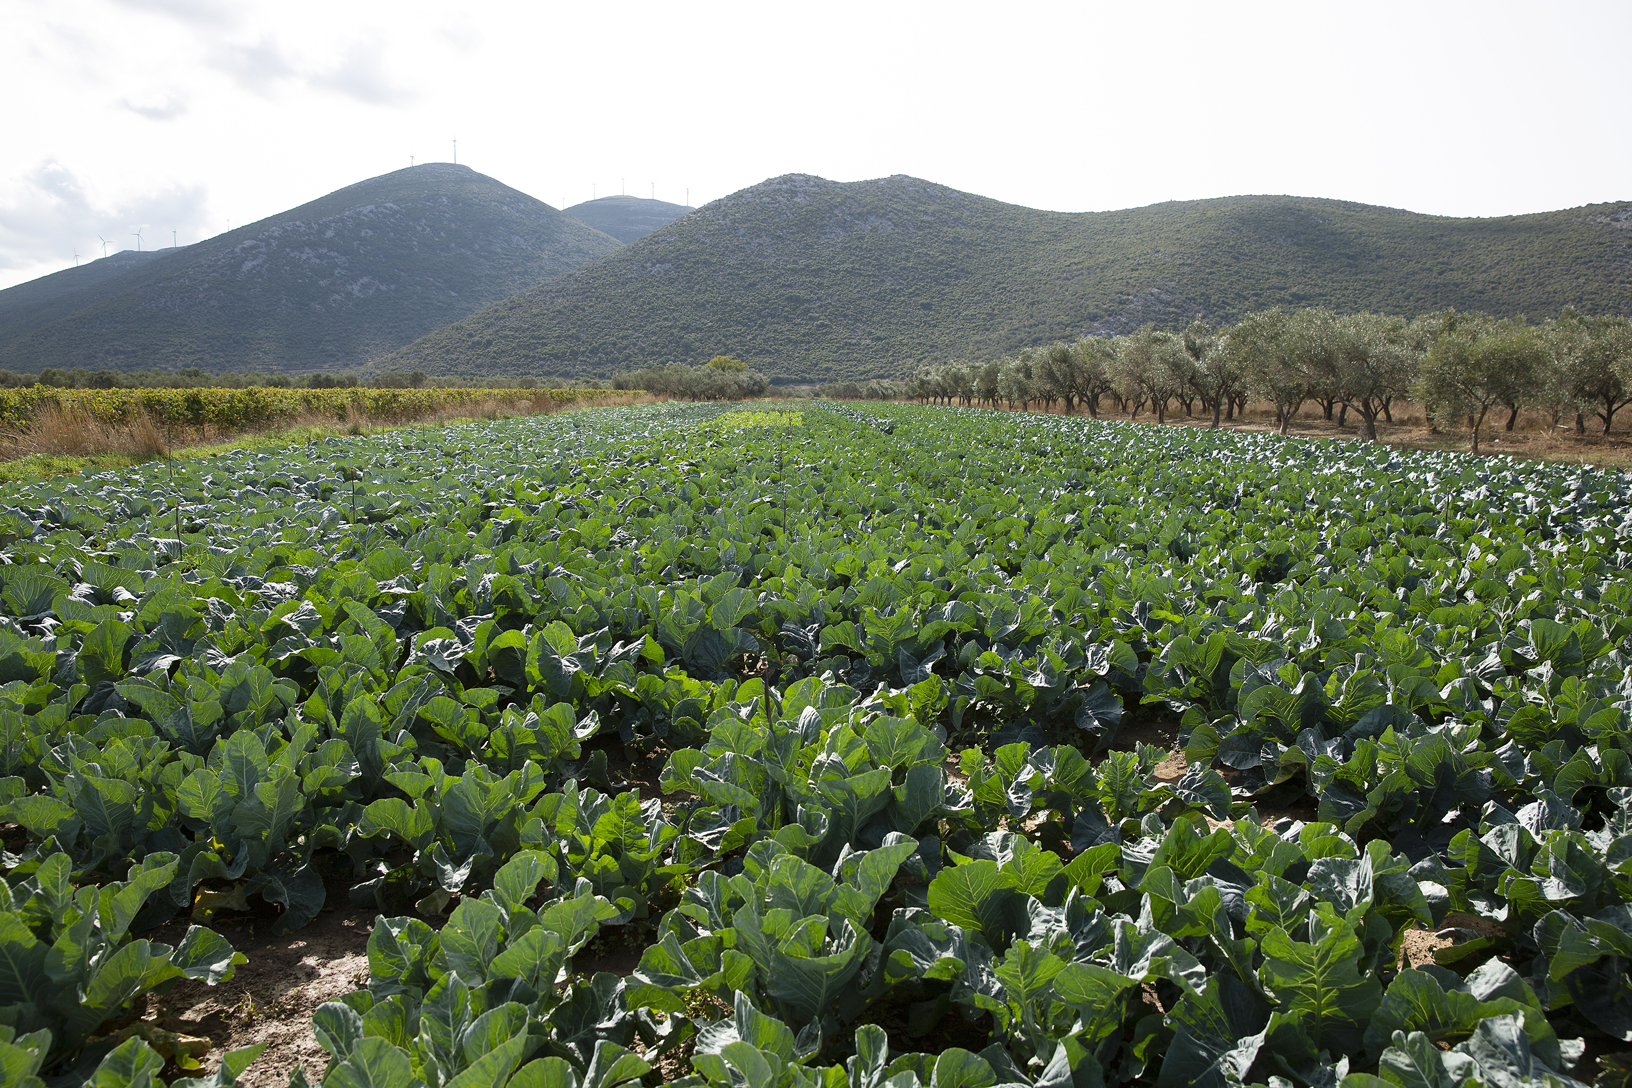 Φυτεία με λάχανα στο κάμπο, χωριό Δύστος. Φωτογραφία: ©Βασίλης Συκάς, για τον Δήμο Κύμης-Αλιβερίου